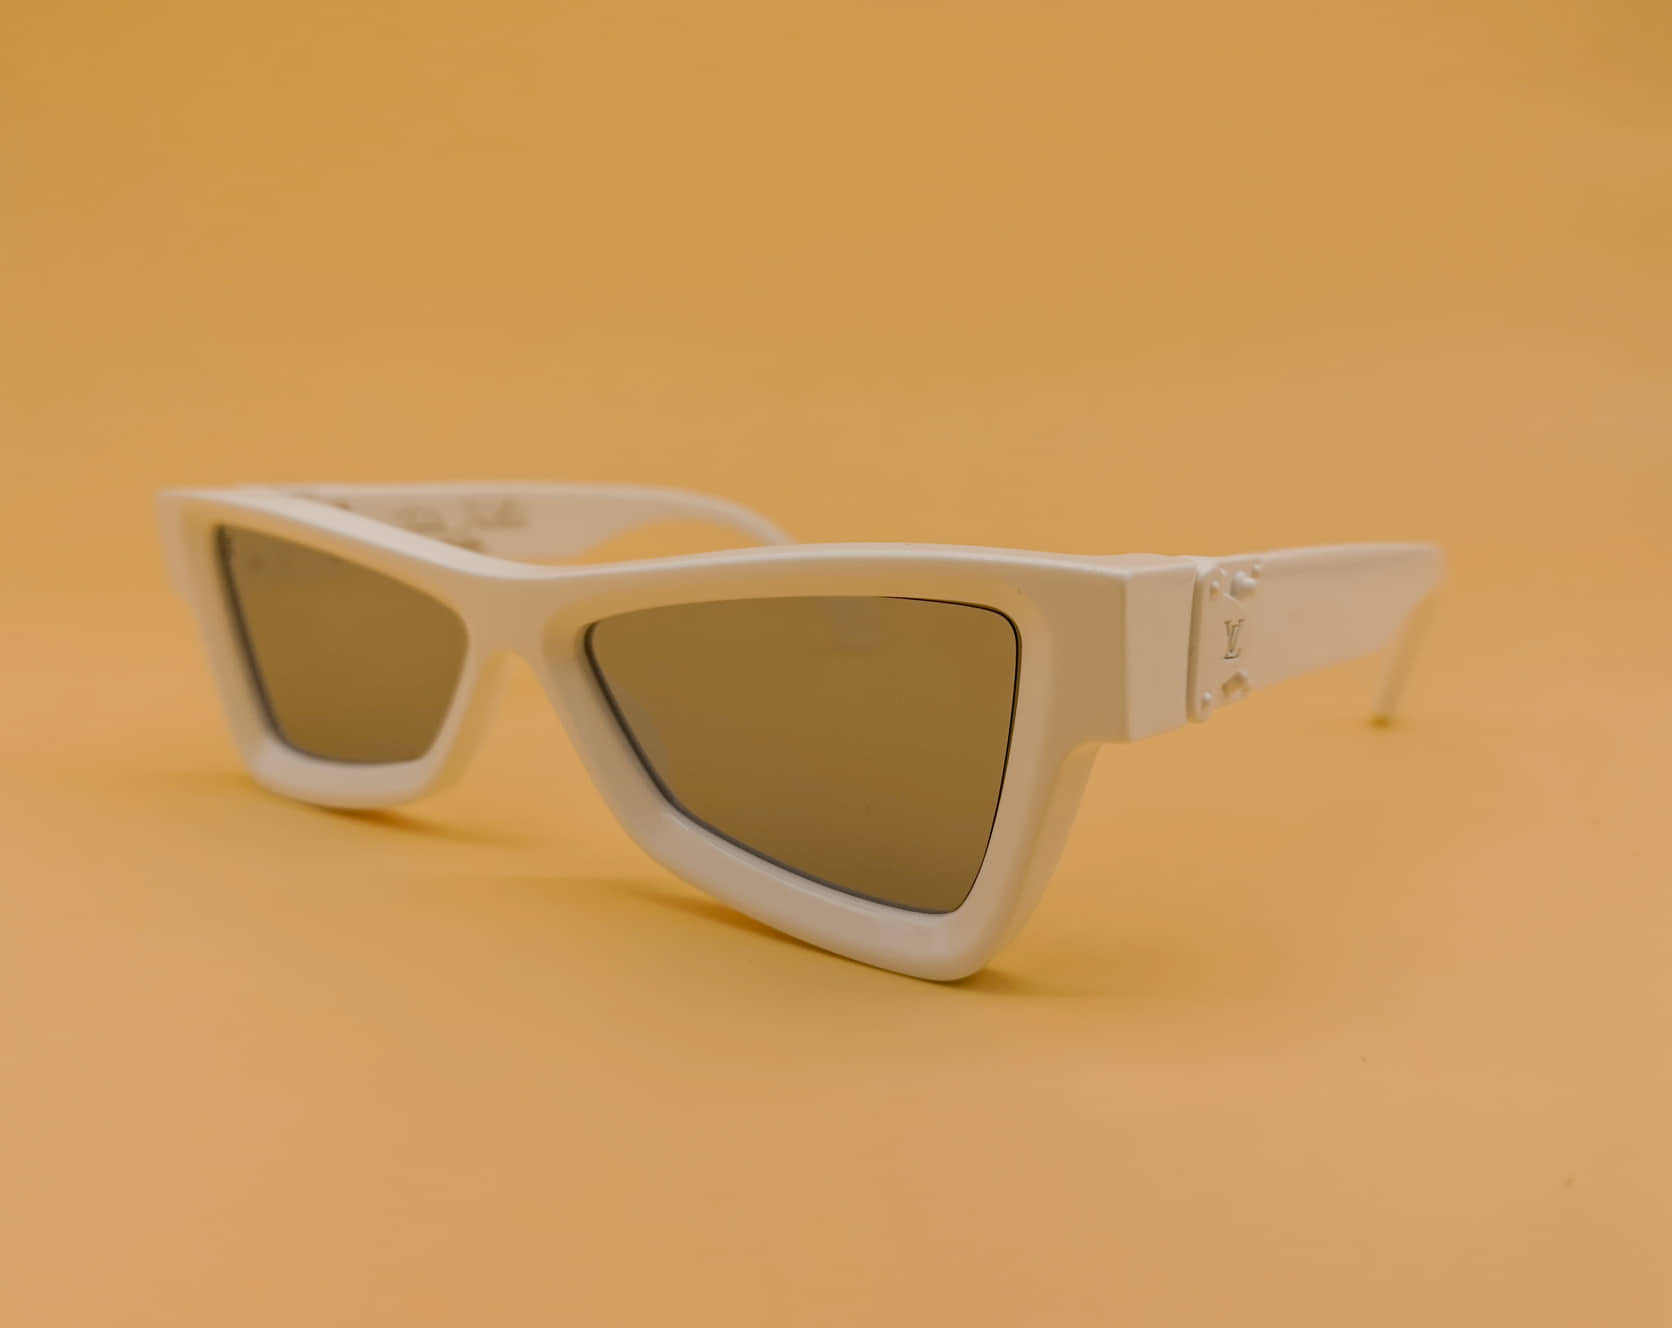 Louis Vuitton X Virgil Abloh Skepticals Sunglasses - Selectionne PH